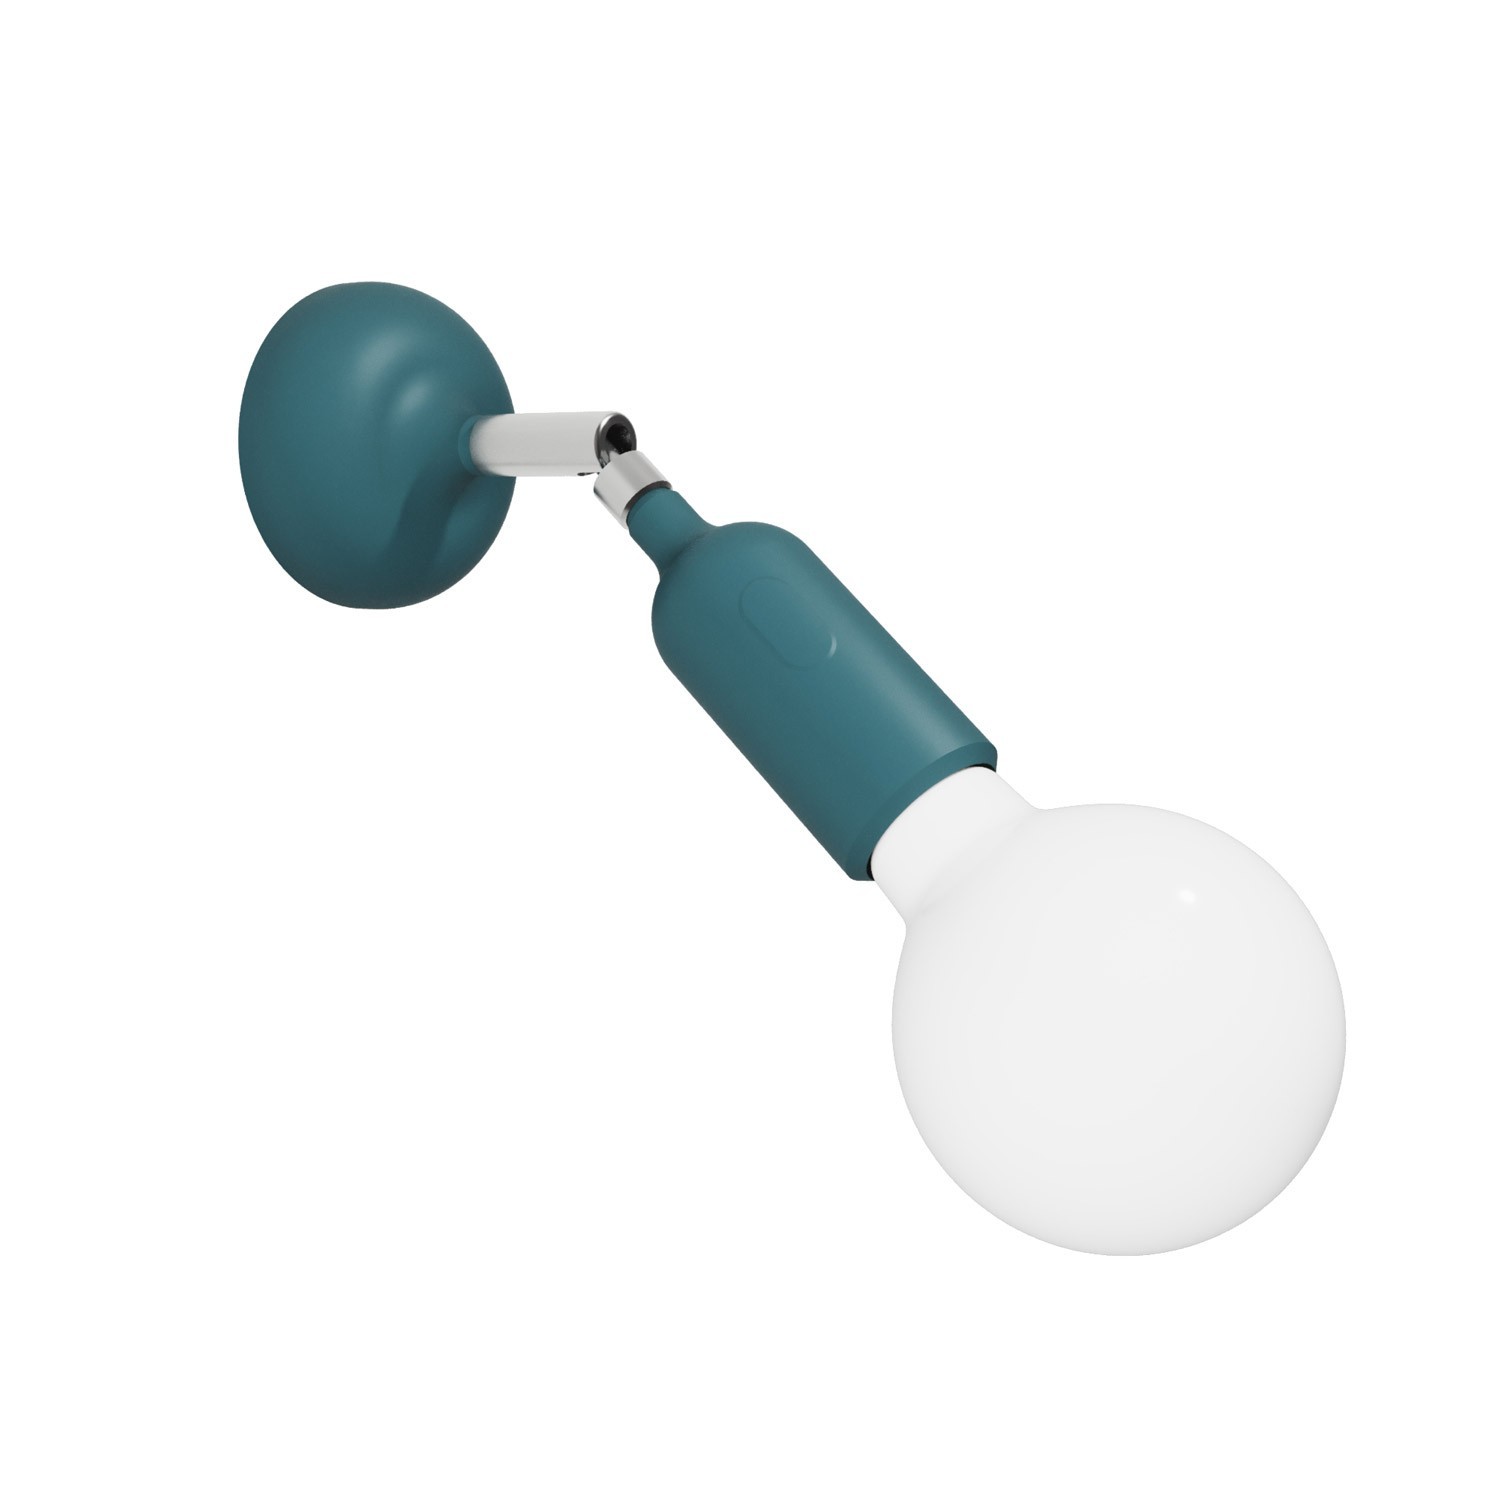 Lámpara Fermaluce de silicona con articulación y con interruptor incorporado